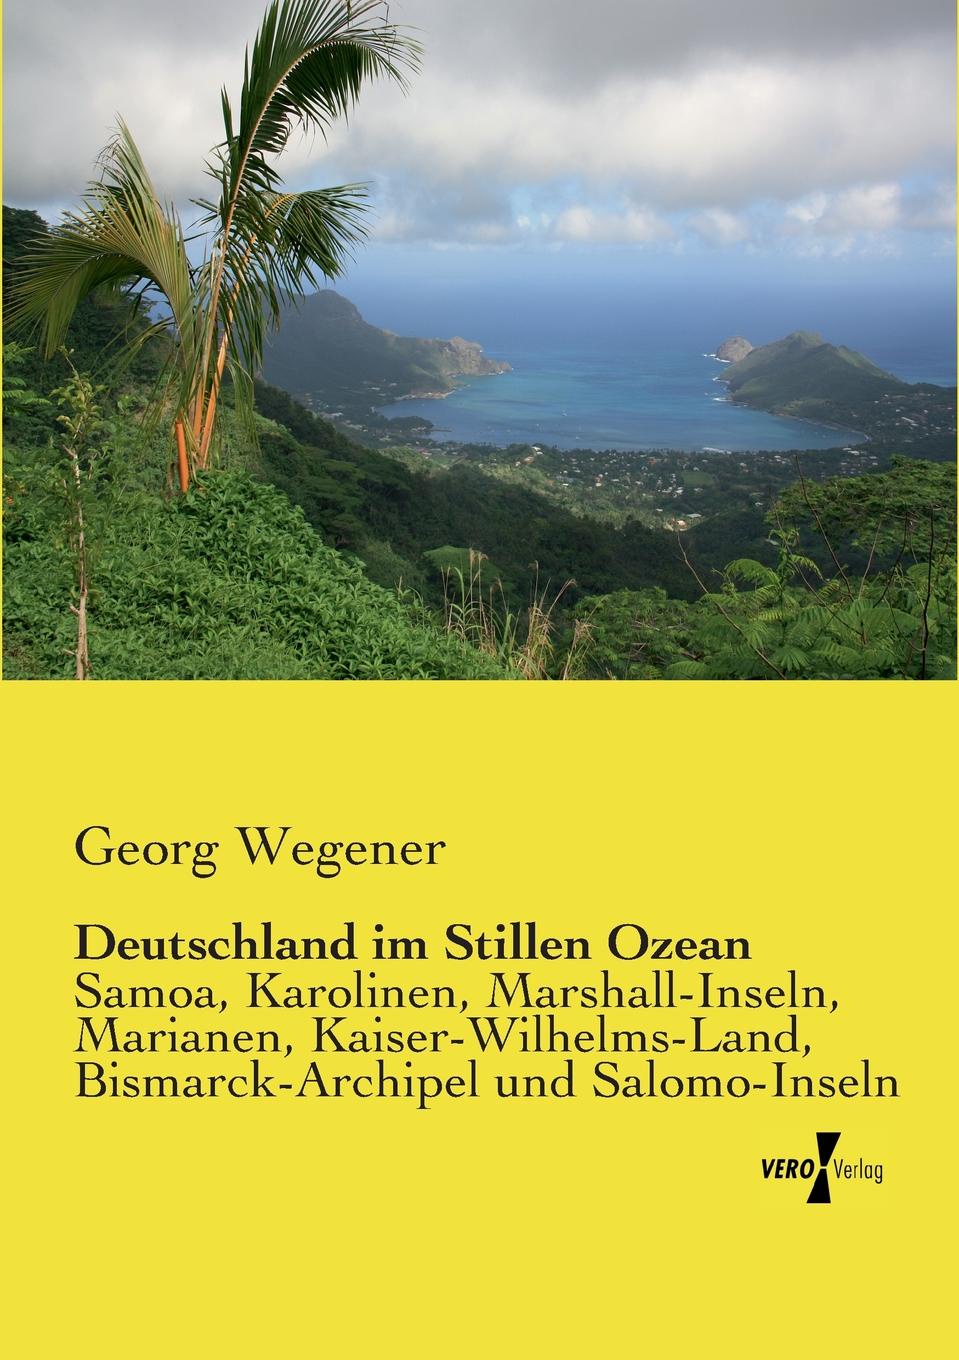 Georg Wegener Deutschland im Stillen Ozean